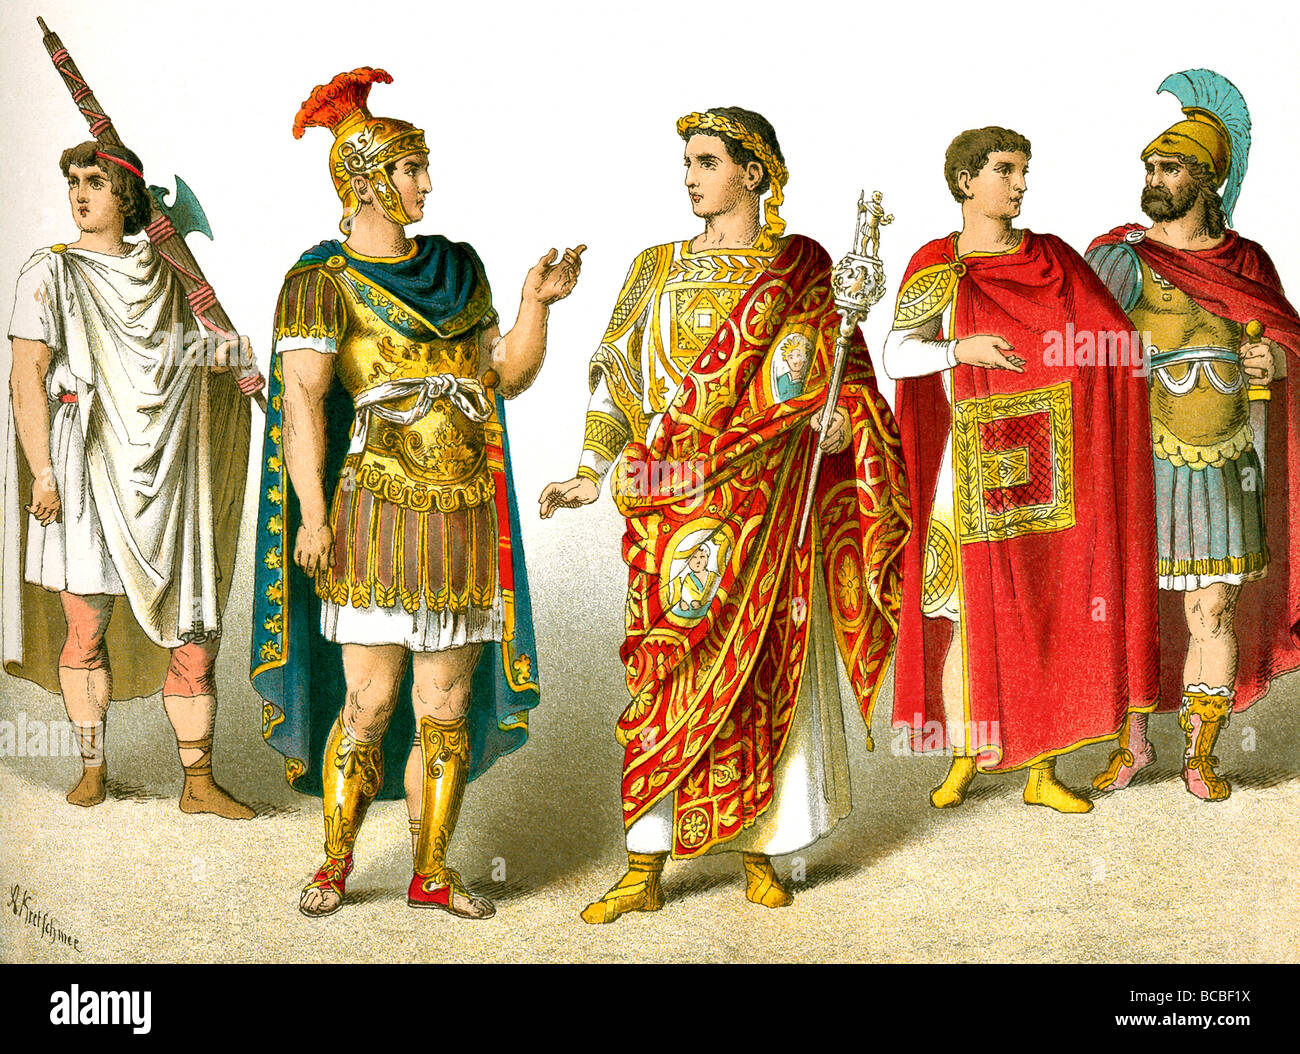 La ilustración muestra un lictor romano, general, general celebrando un triunfo, magistrado, funcionario. Foto de stock